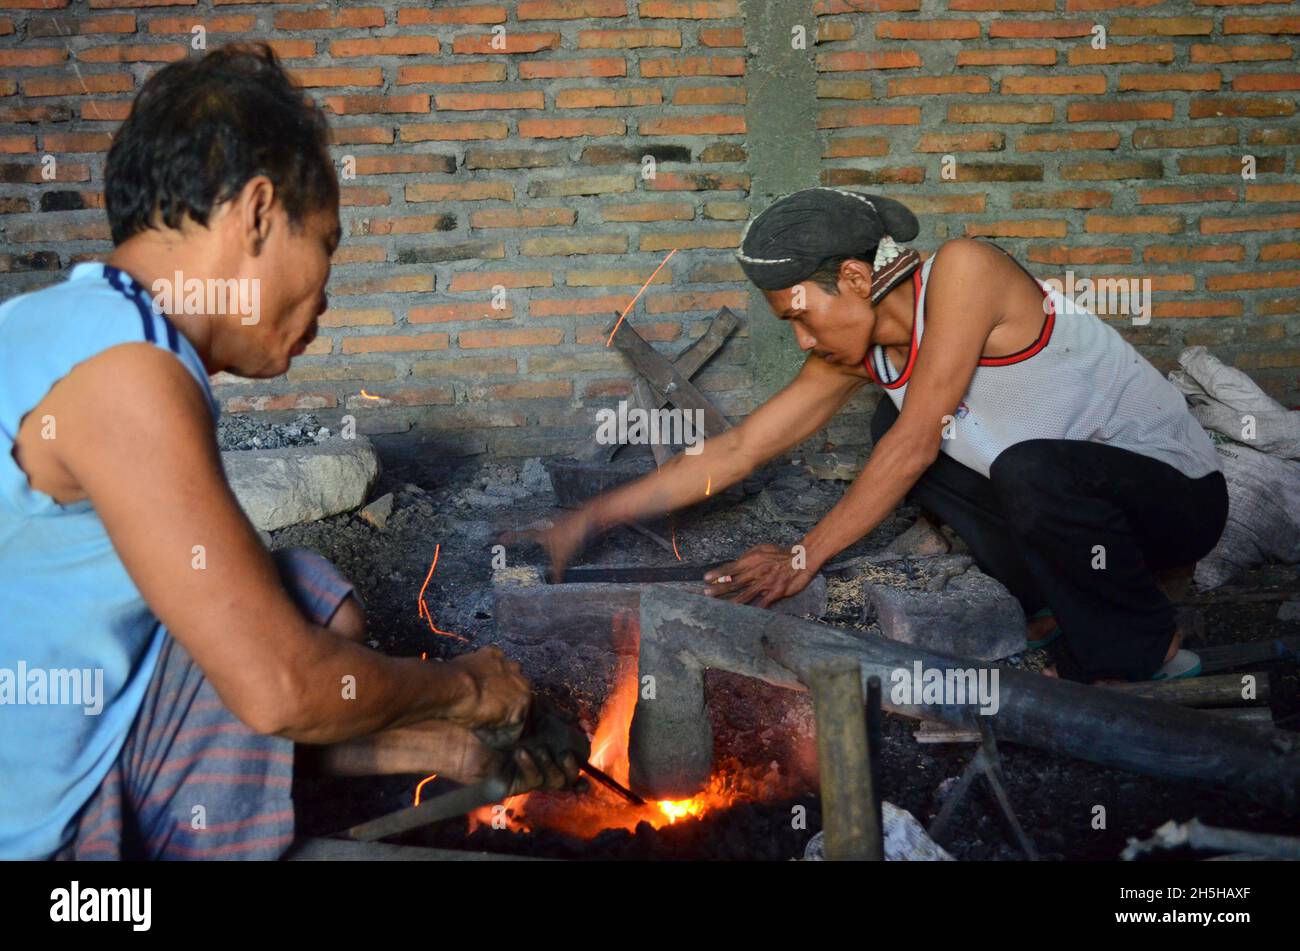 Der Prozess der Herstellung von Gamelan im Dorf Mojolaban, Sukoharjo, Zentral-Java, Indonesien. Stockfoto